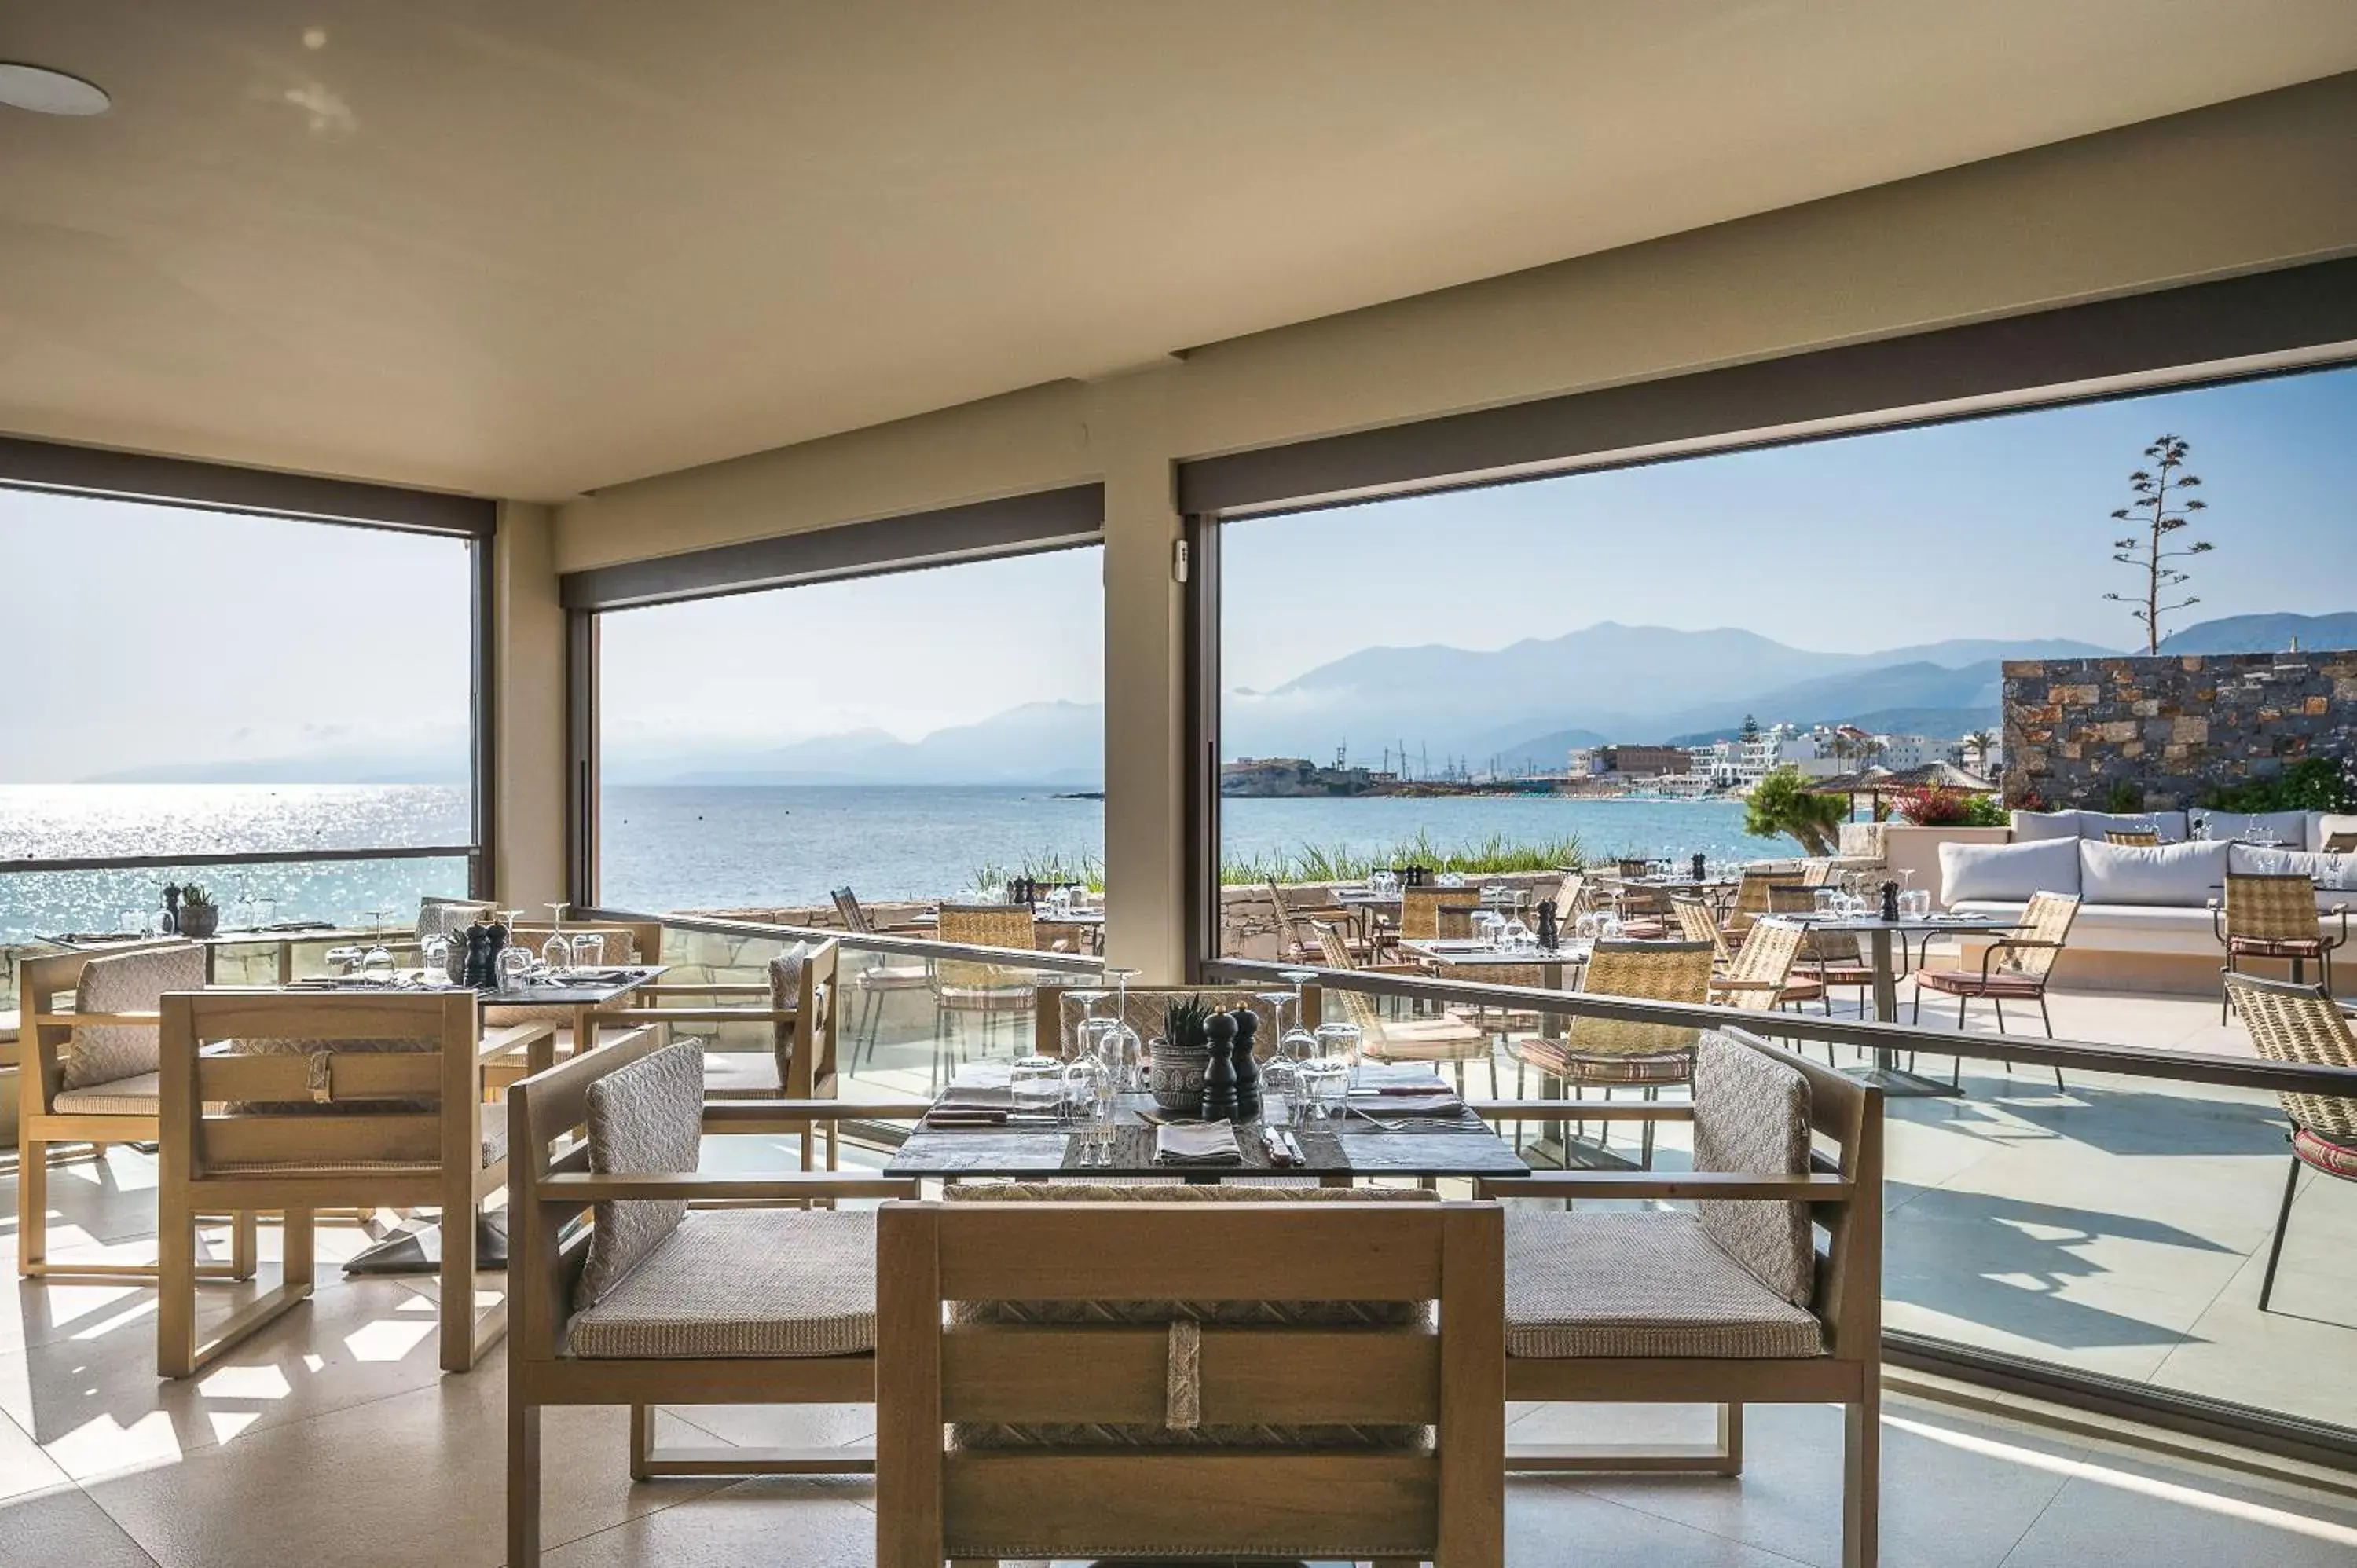 Restaurant/places to eat in Creta Maris Resort